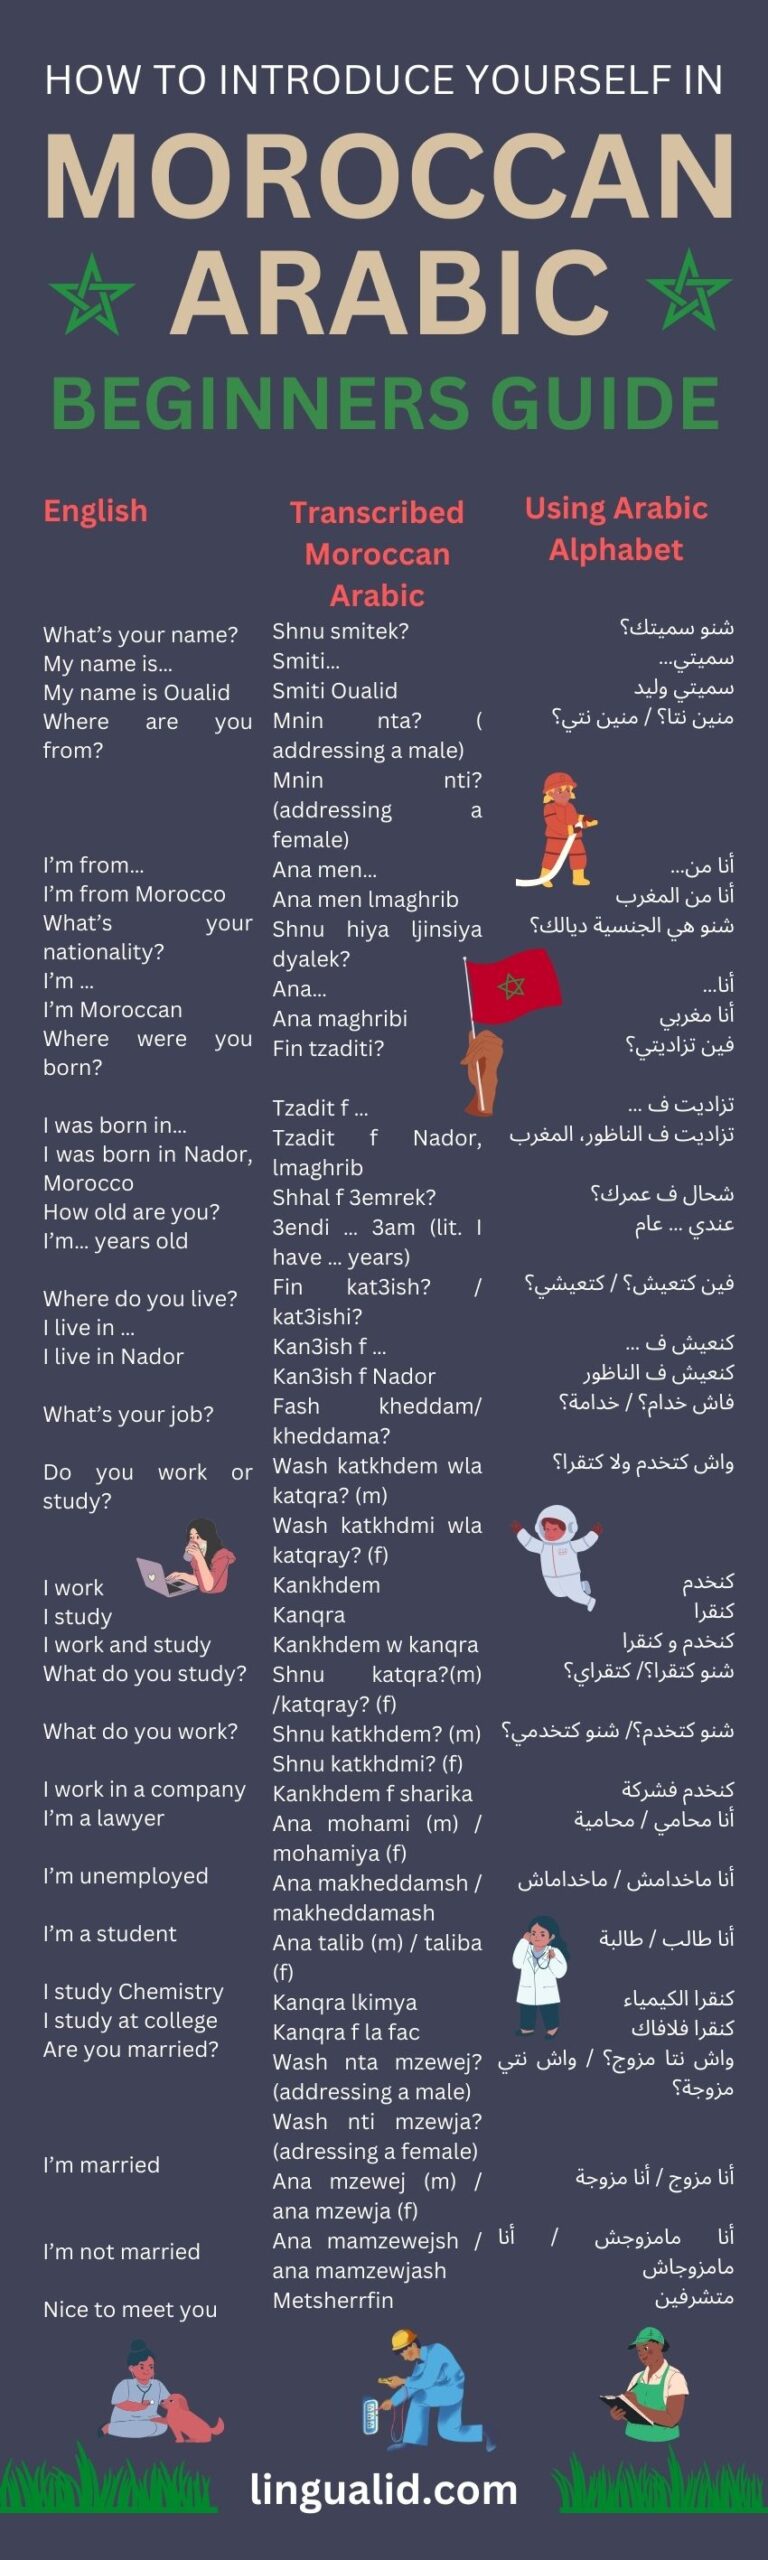 How to introduce yourself in Moroccan Arabic Darija